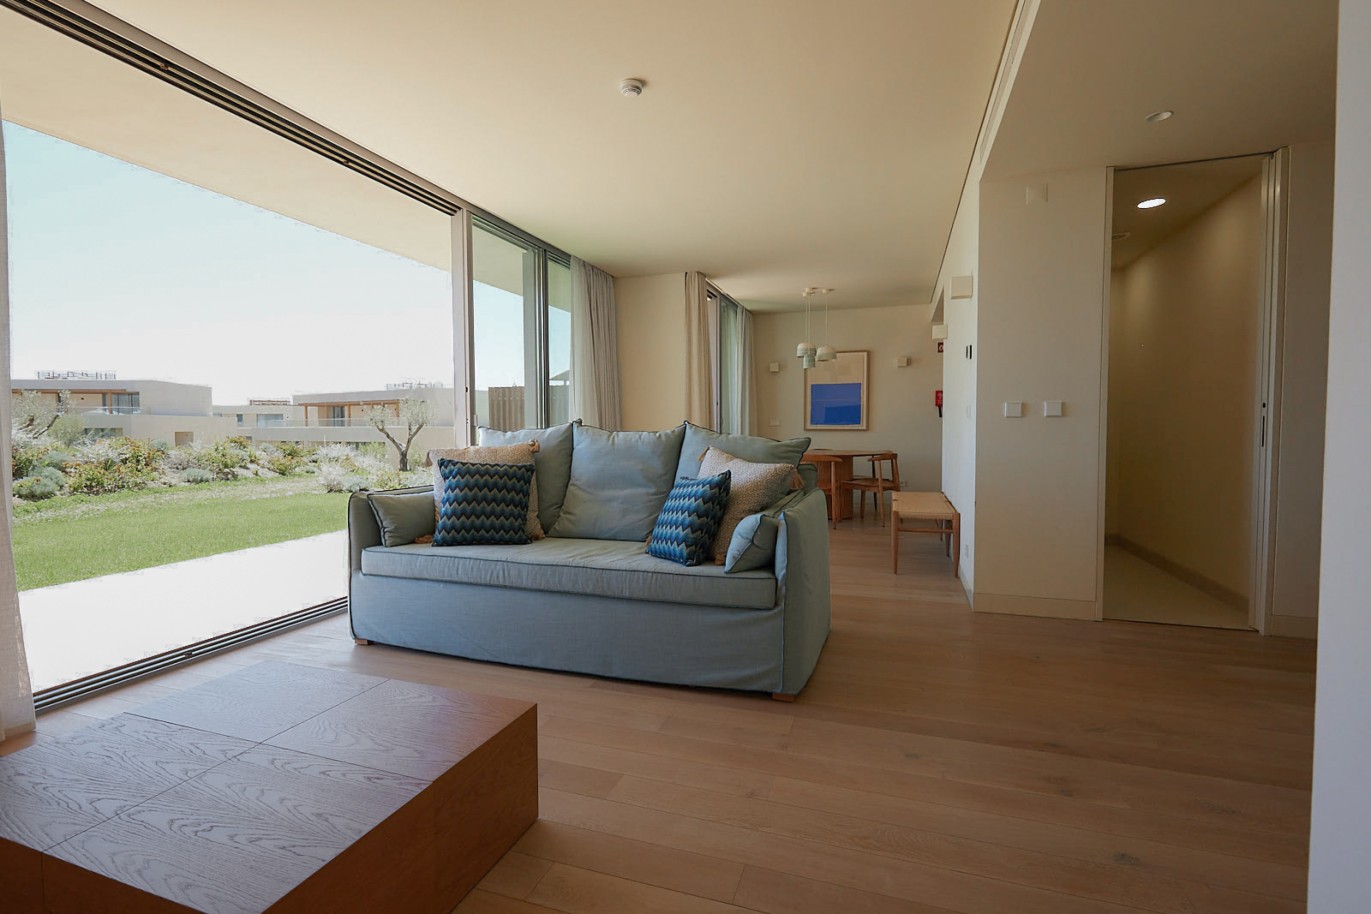 Piso de 2 dormitorios en complejo, en venta en Porches, Algarve_229170